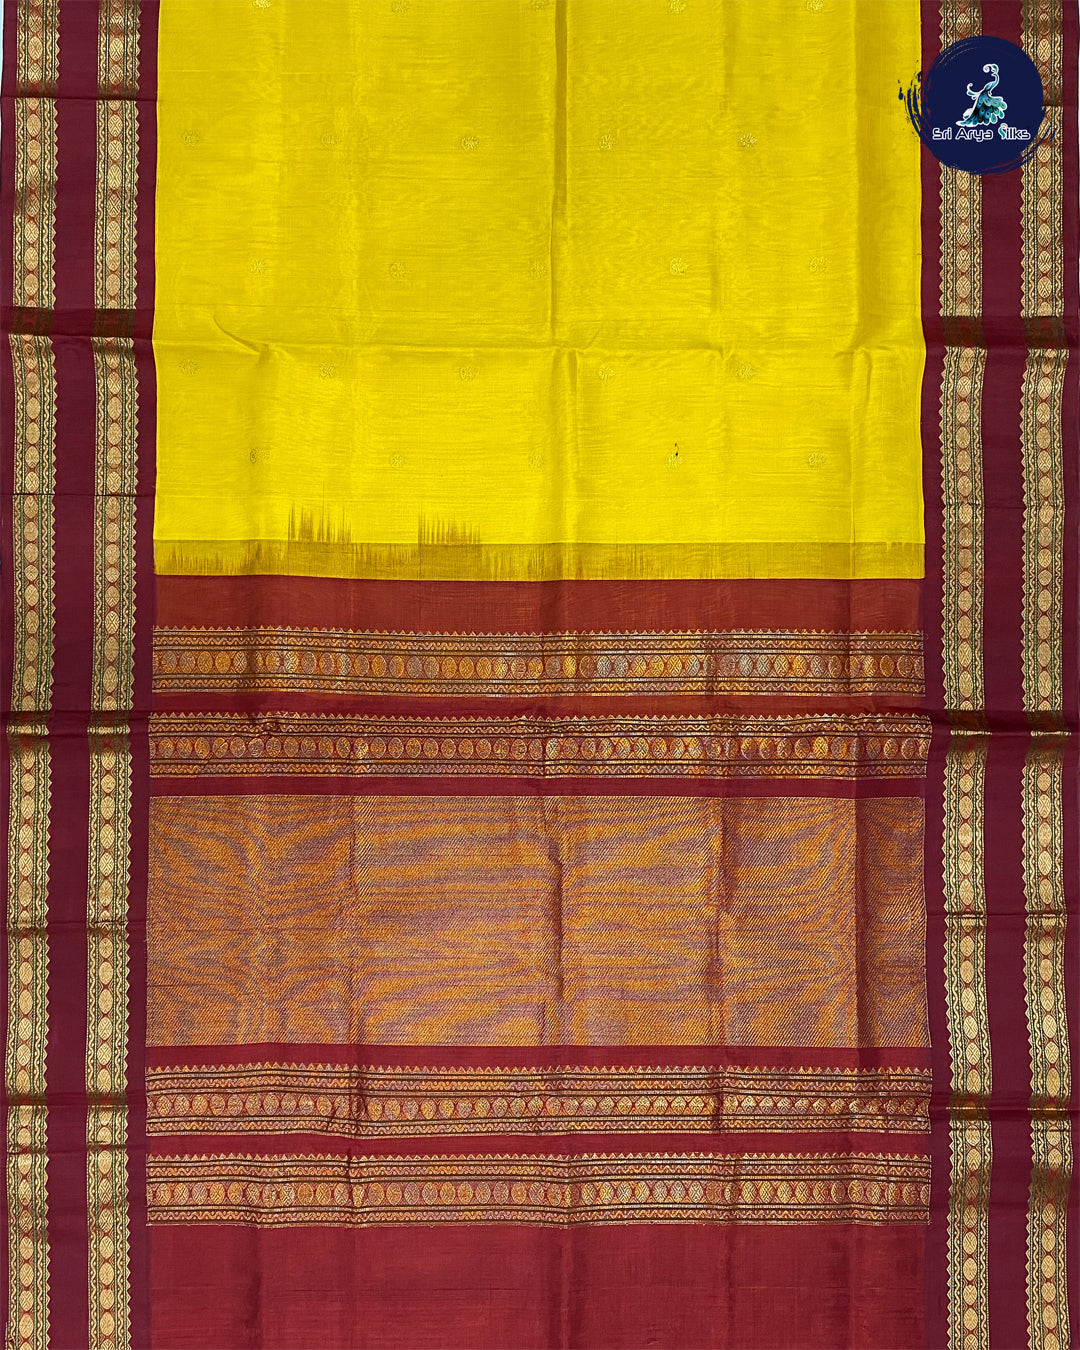 Yellow Korvai Silk Cotton Saree With Maroon Blouse & Buttas Pattern